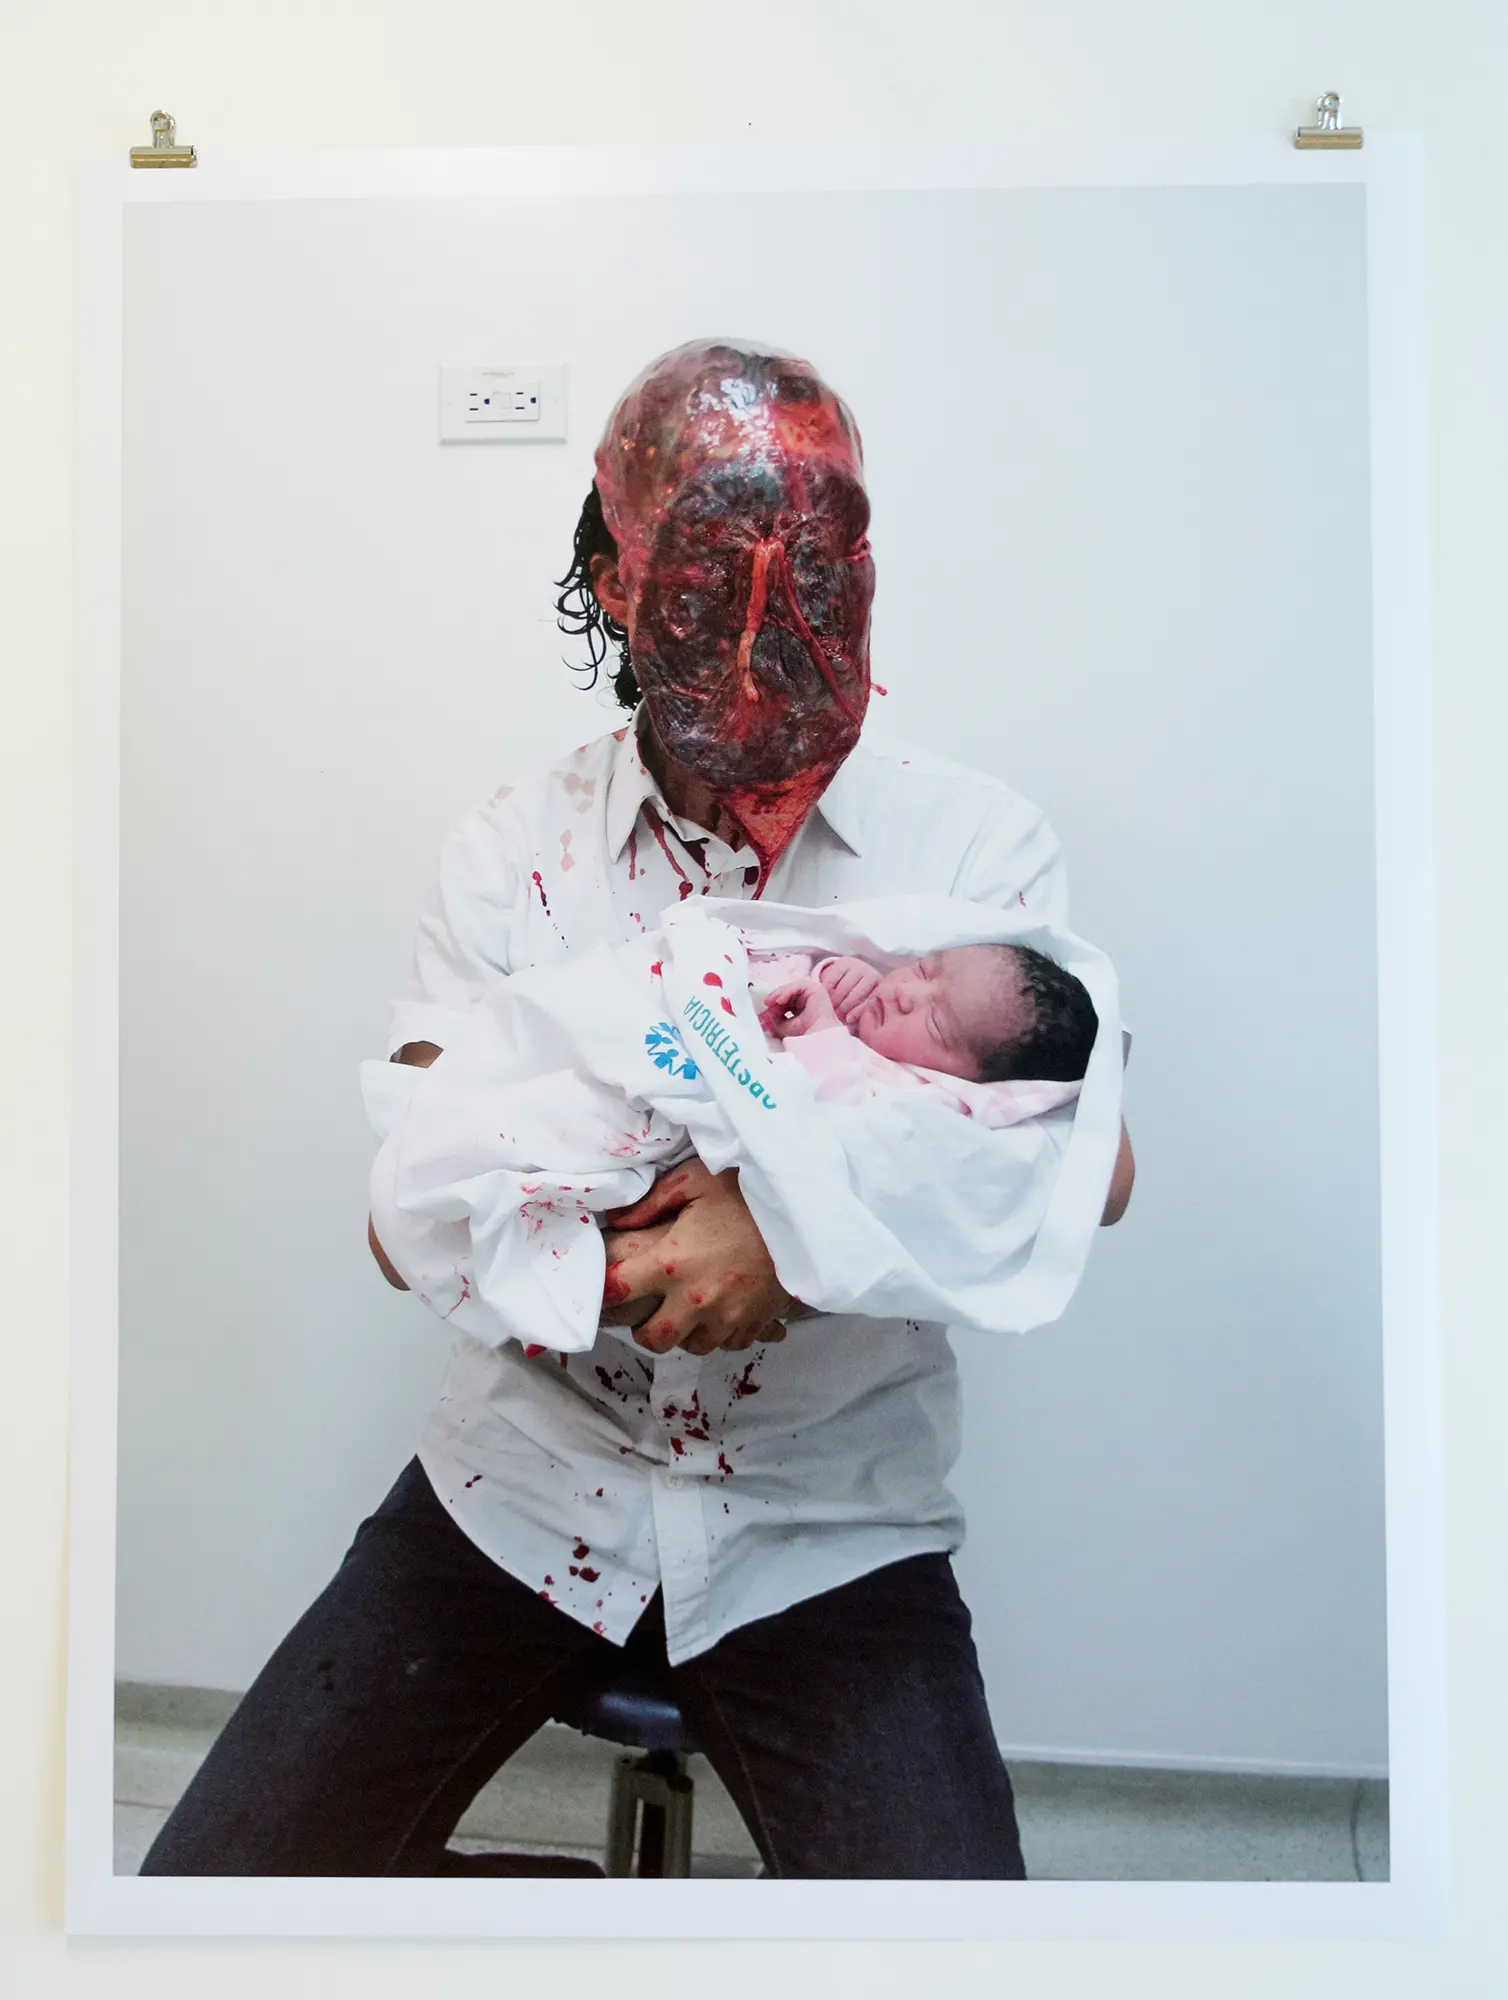 På en upphängd fotoplansch syns sittande en manlig figur. Figuren bär en mask som gör att det ser ut han som att han har ett stort sår över hela ansiktet. På hans skjorta syns röda fläckar. I sin famn håller han ett litet barn.